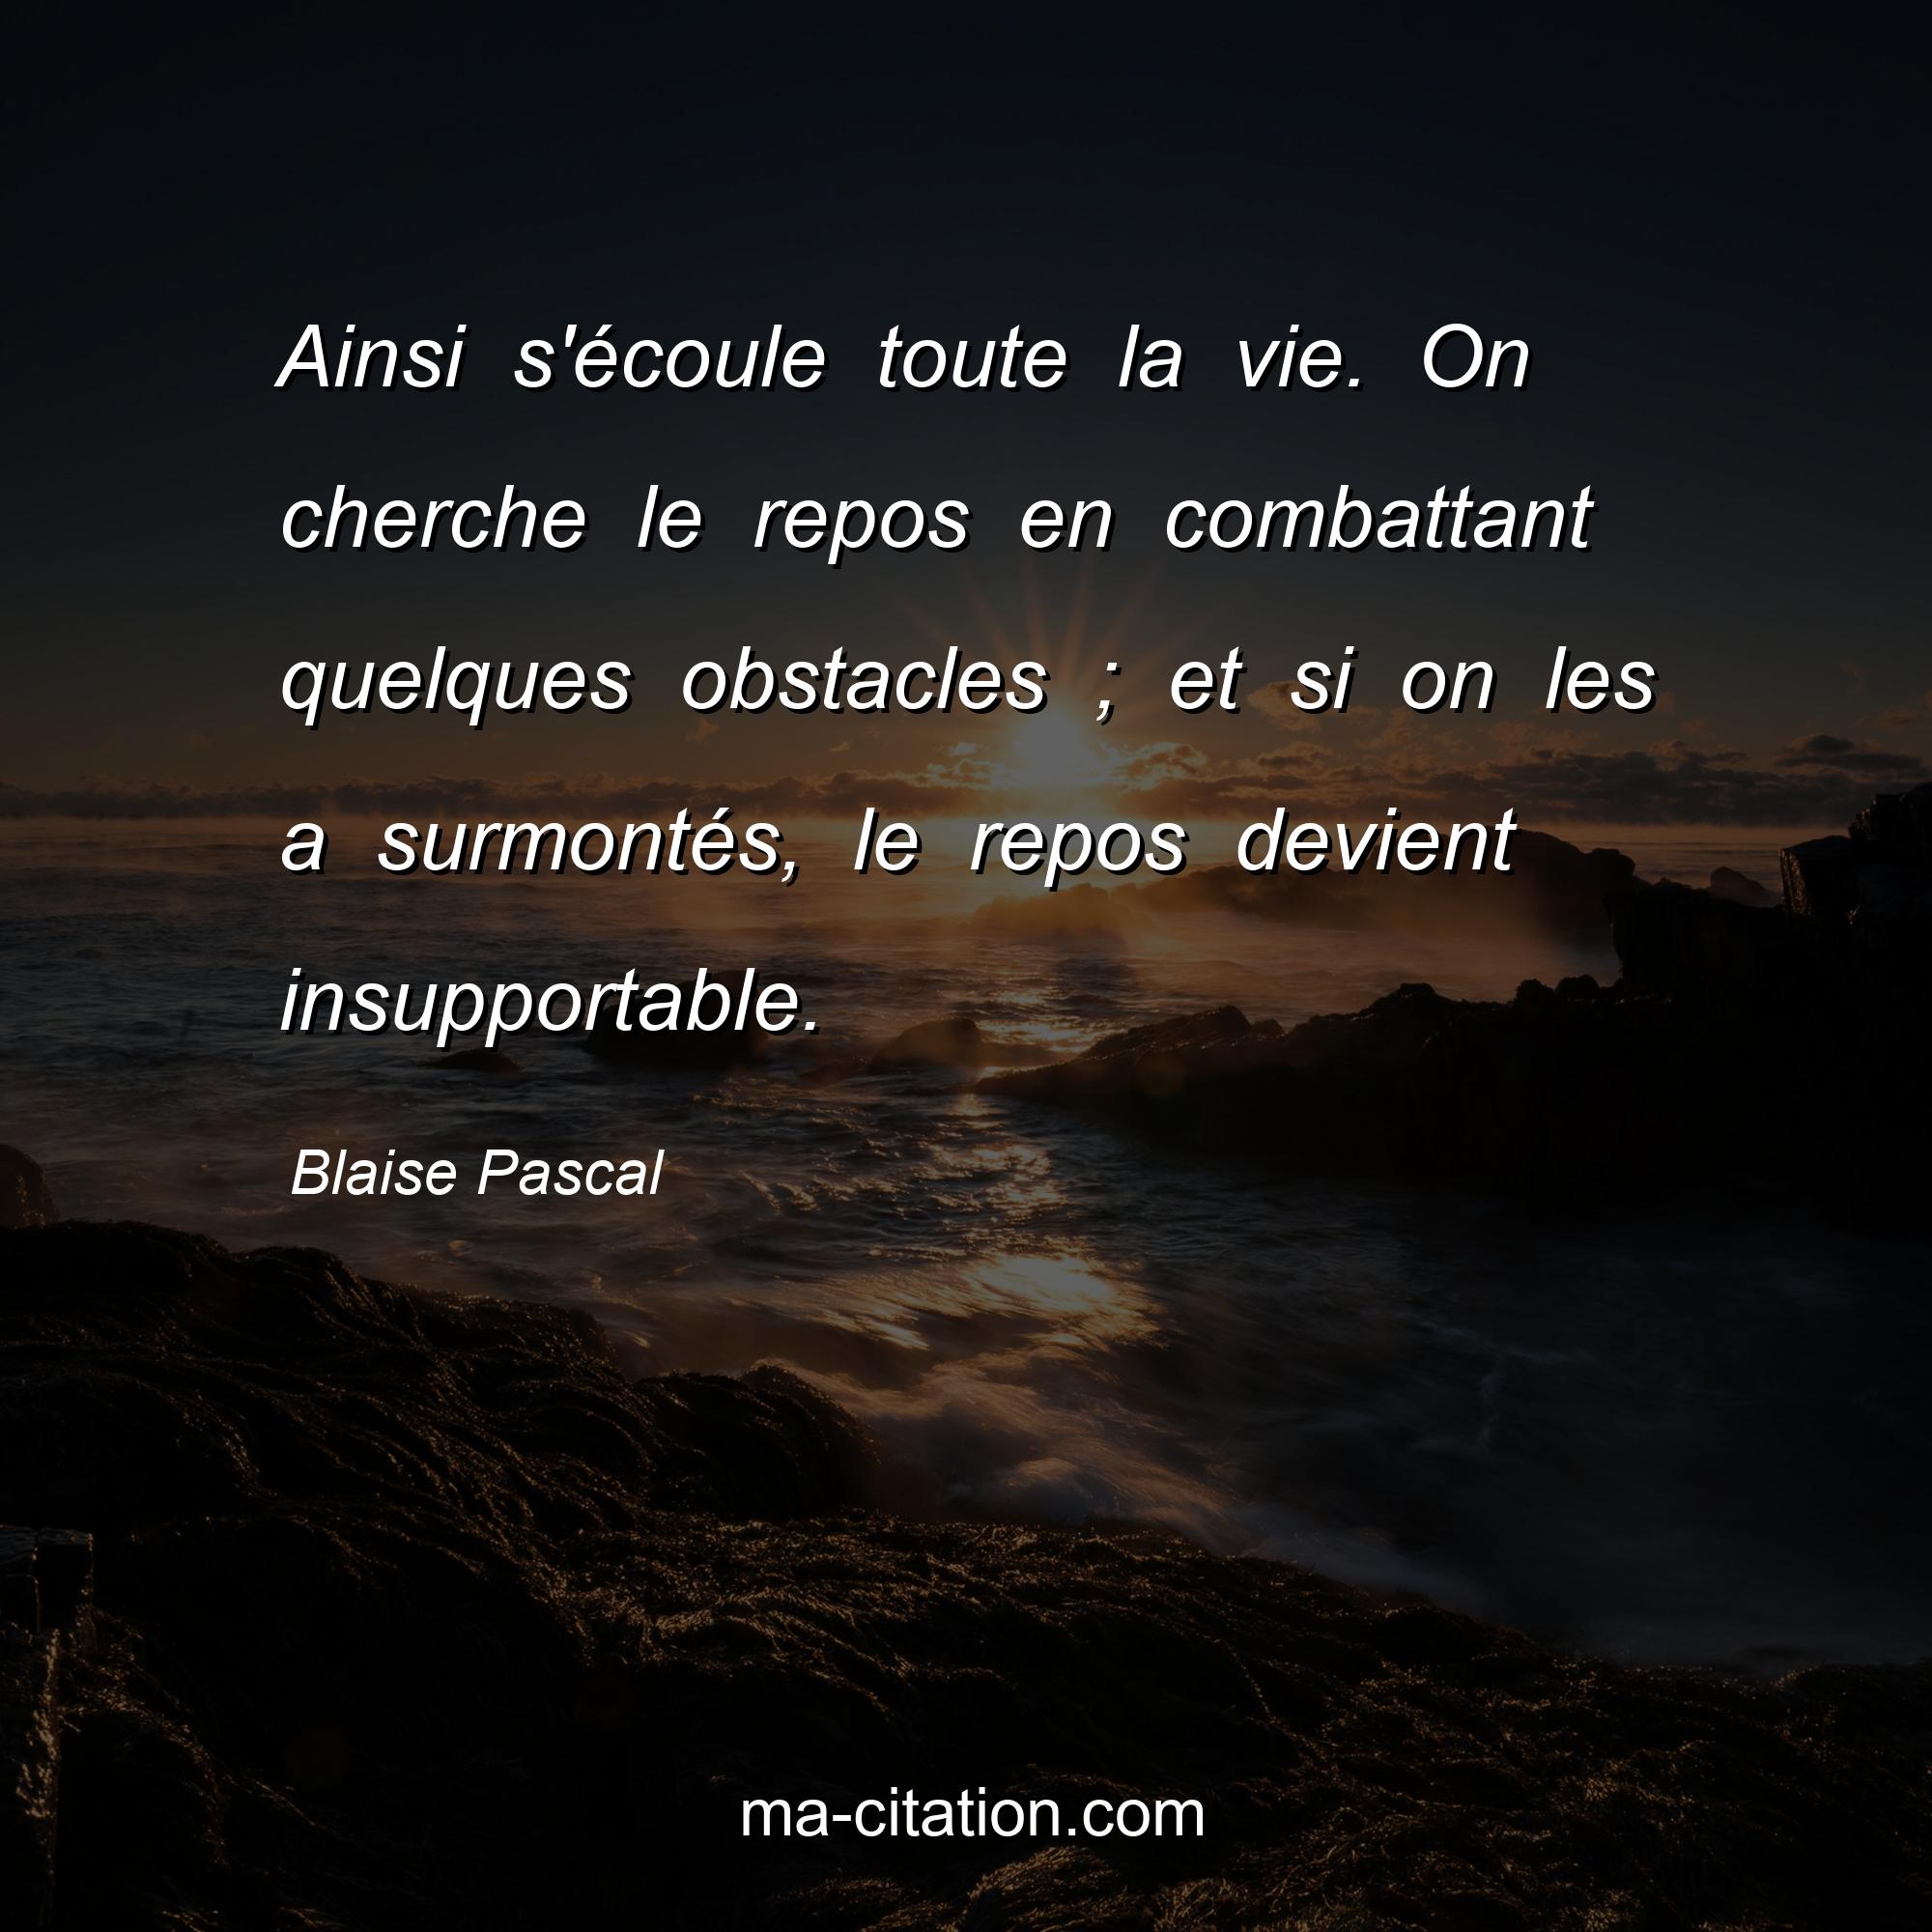 Blaise Pascal : Ainsi s'écoule toute la vie. On cherche le repos en combattant quelques obstacles ; et si on les a surmontés, le repos devient insupportable.